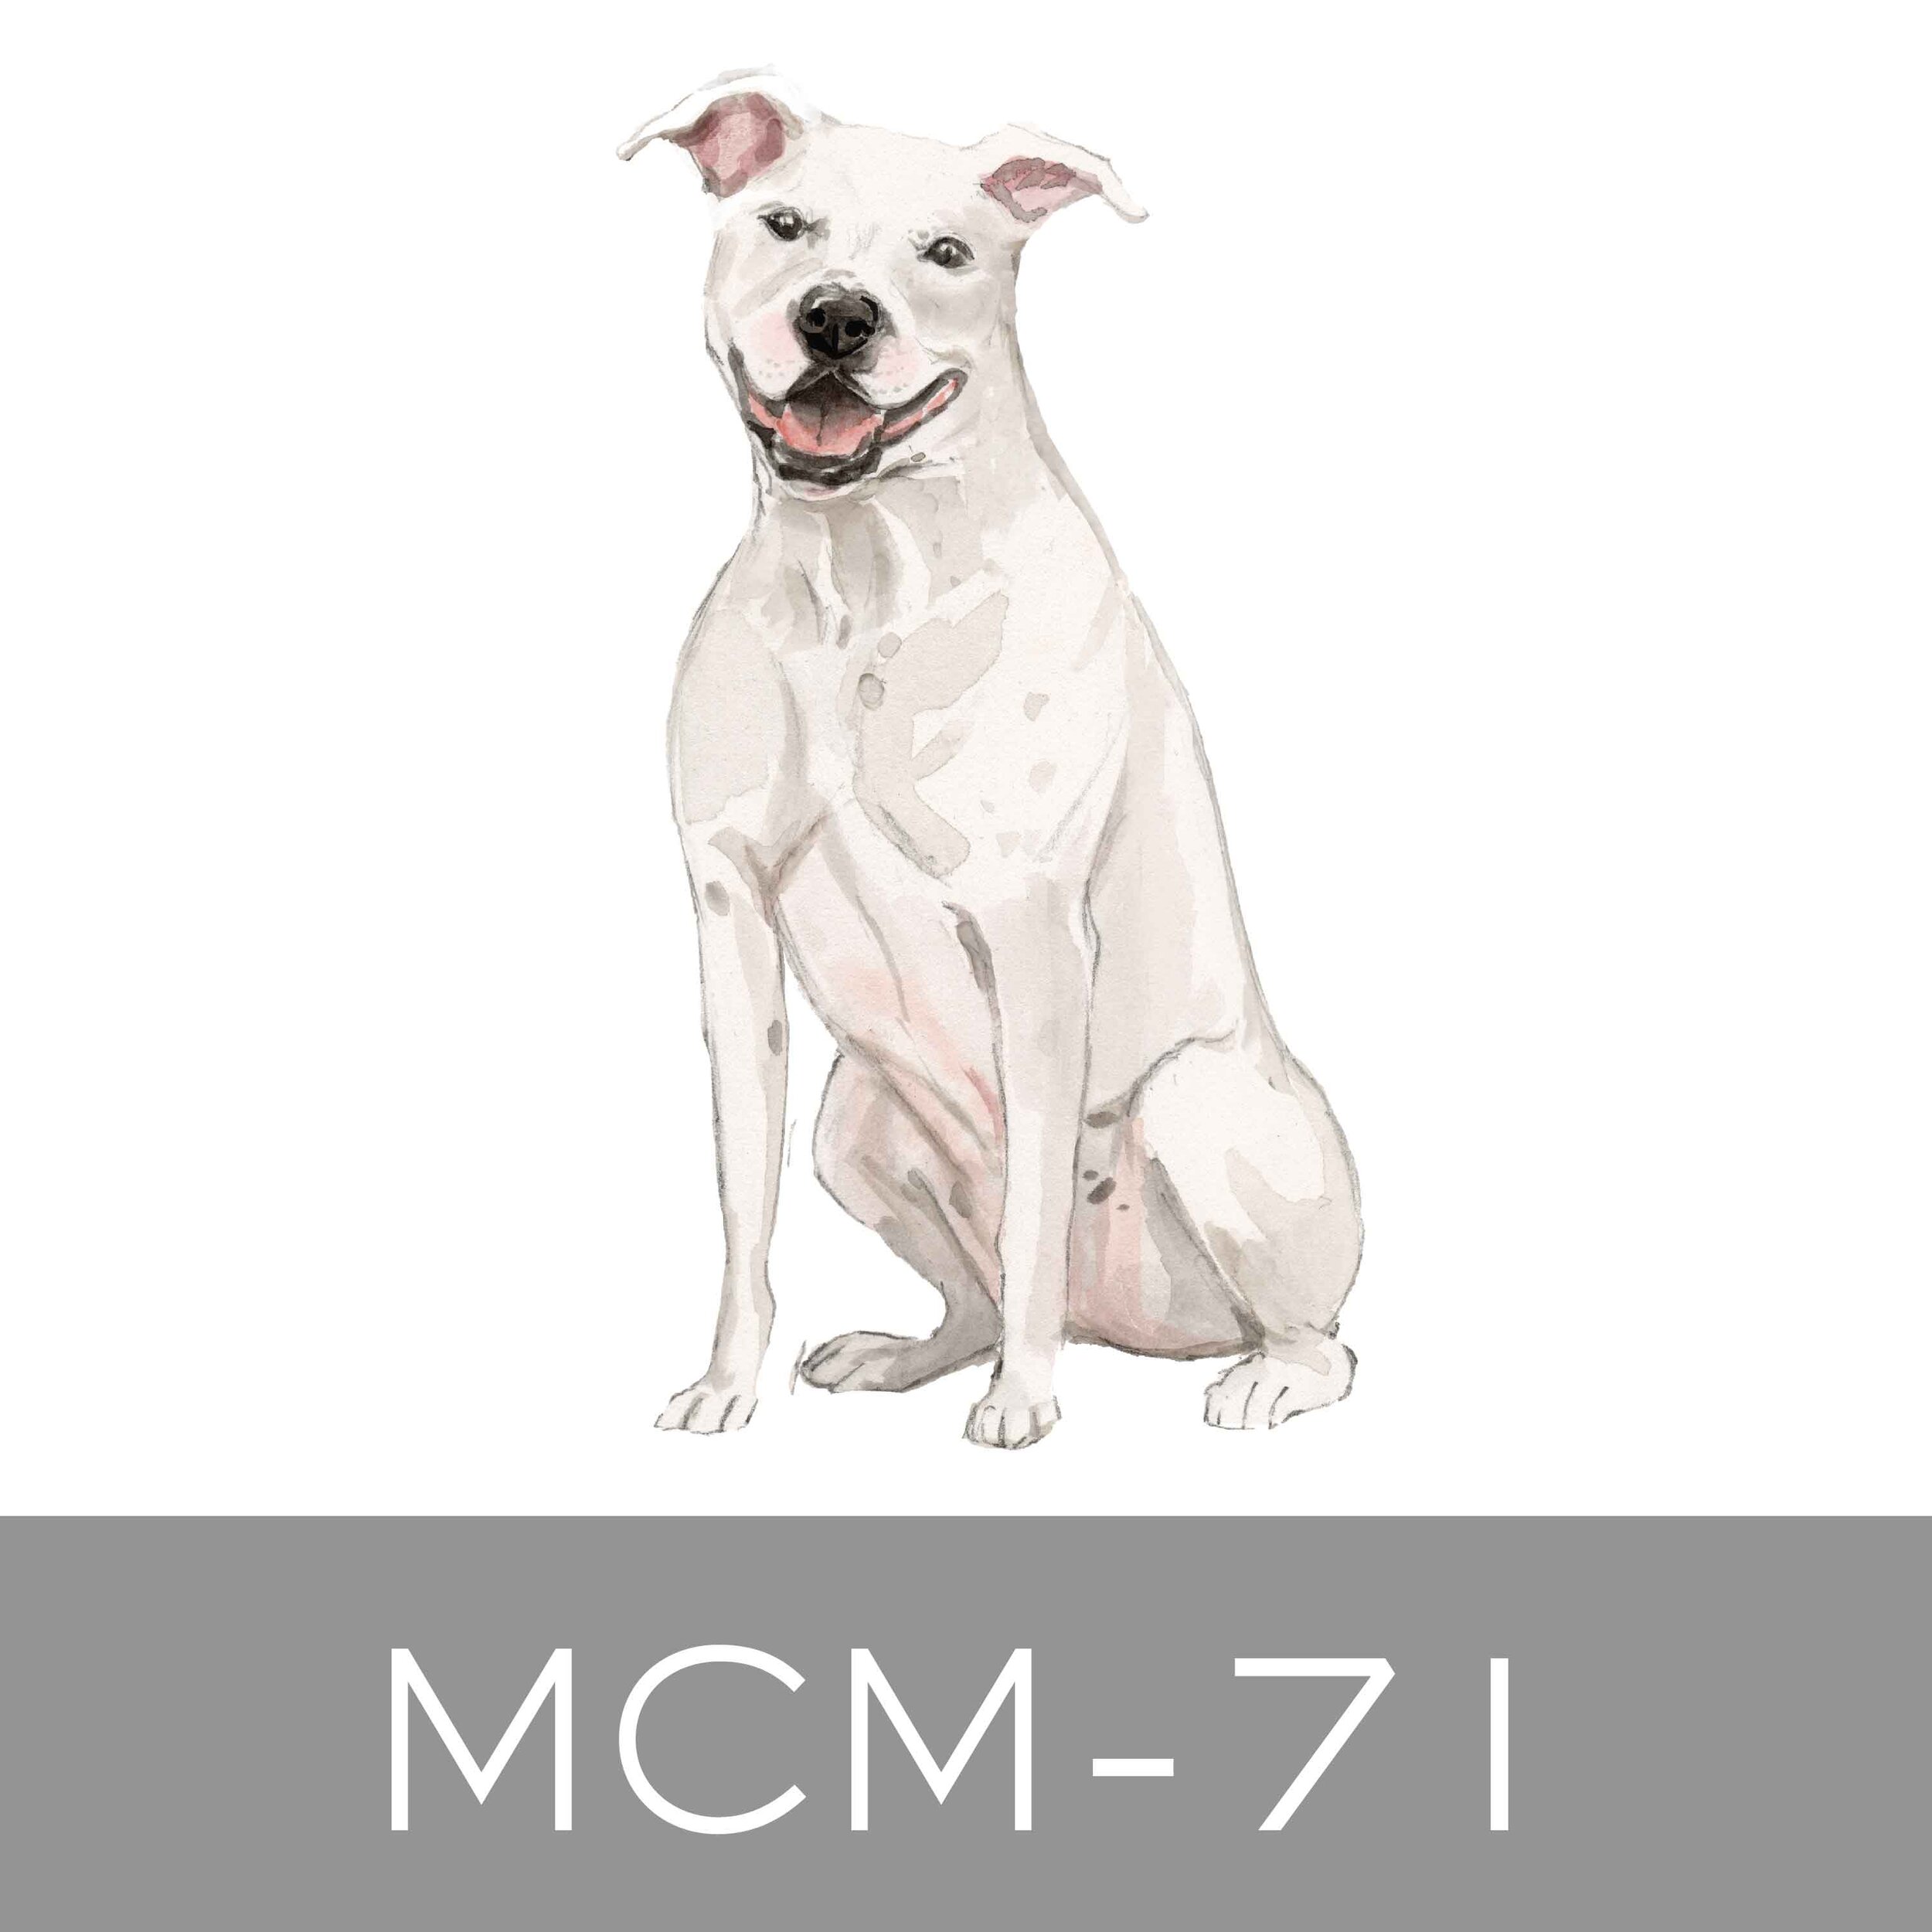 MCM-71.jpg